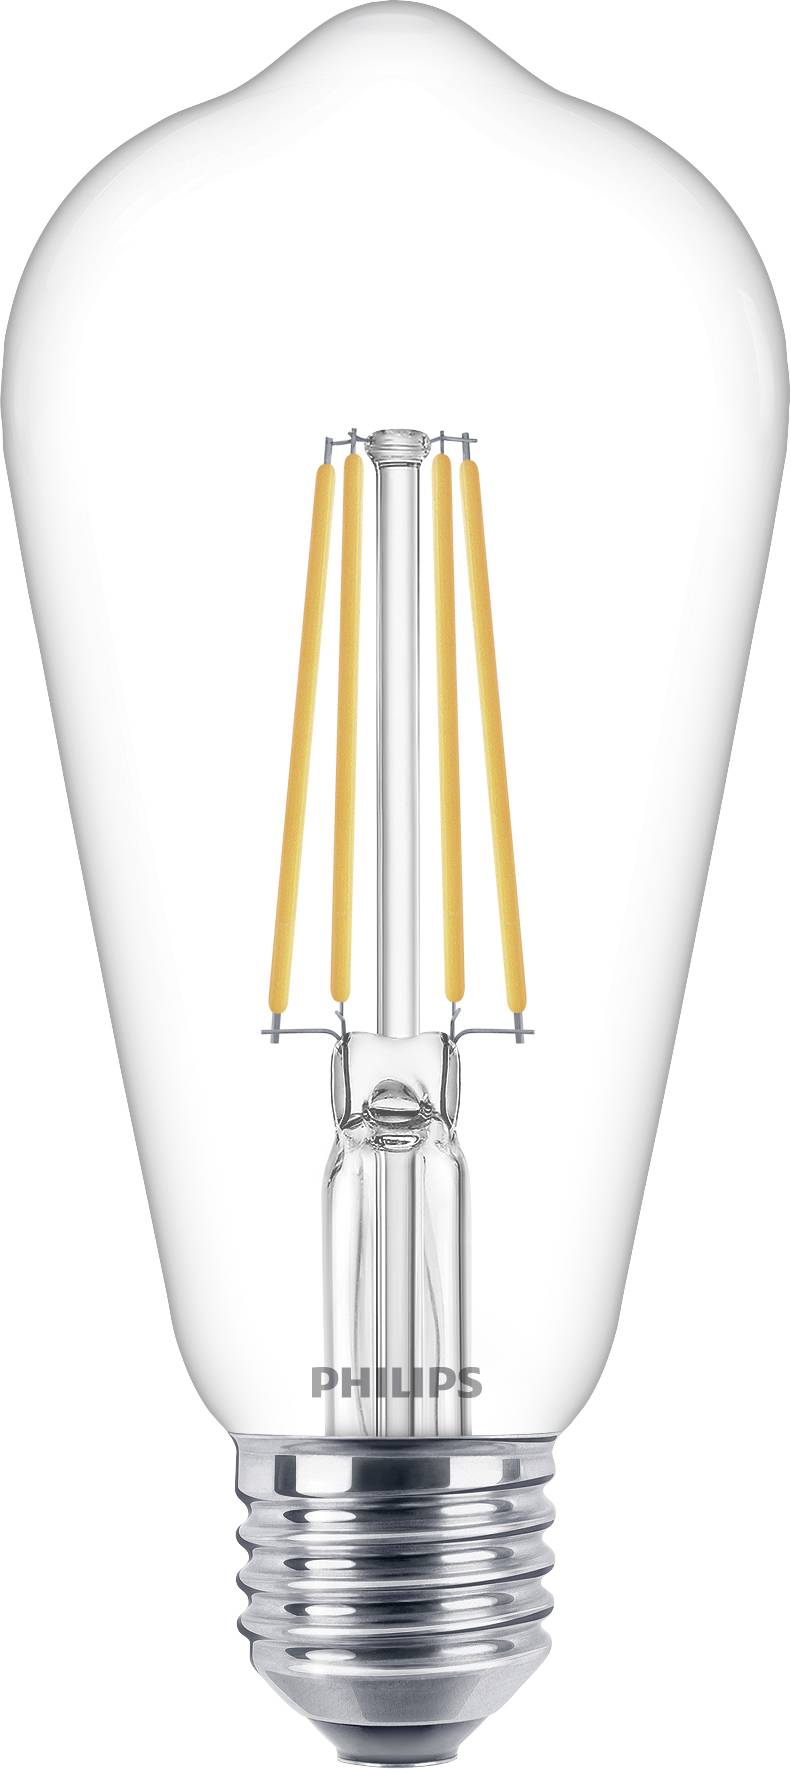 PHILIPS Lighting LED EEK A++ (A++ - E) E27 Spezialform 7 W = 60 W Warmweiß (Ø x L) 6.4 cm x 14